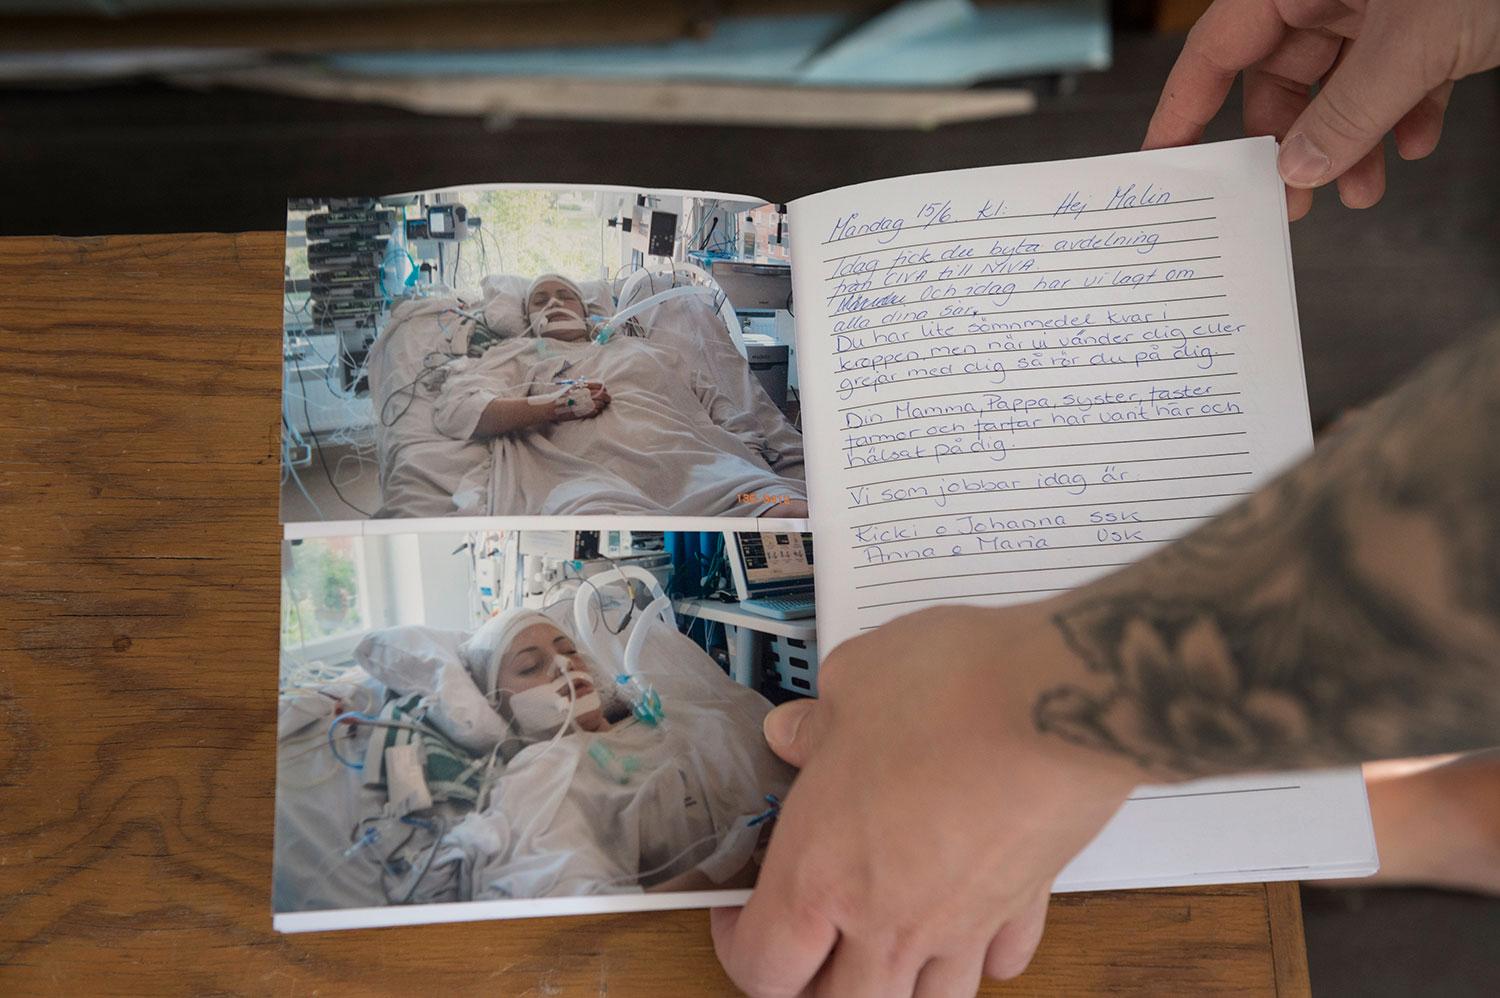 Den 15 juni förra året. Medan Malin ligger nedsövd skriver sjuksköterskorna och familjen dagbok över vad som hänt, vilka som hälsat på henne.